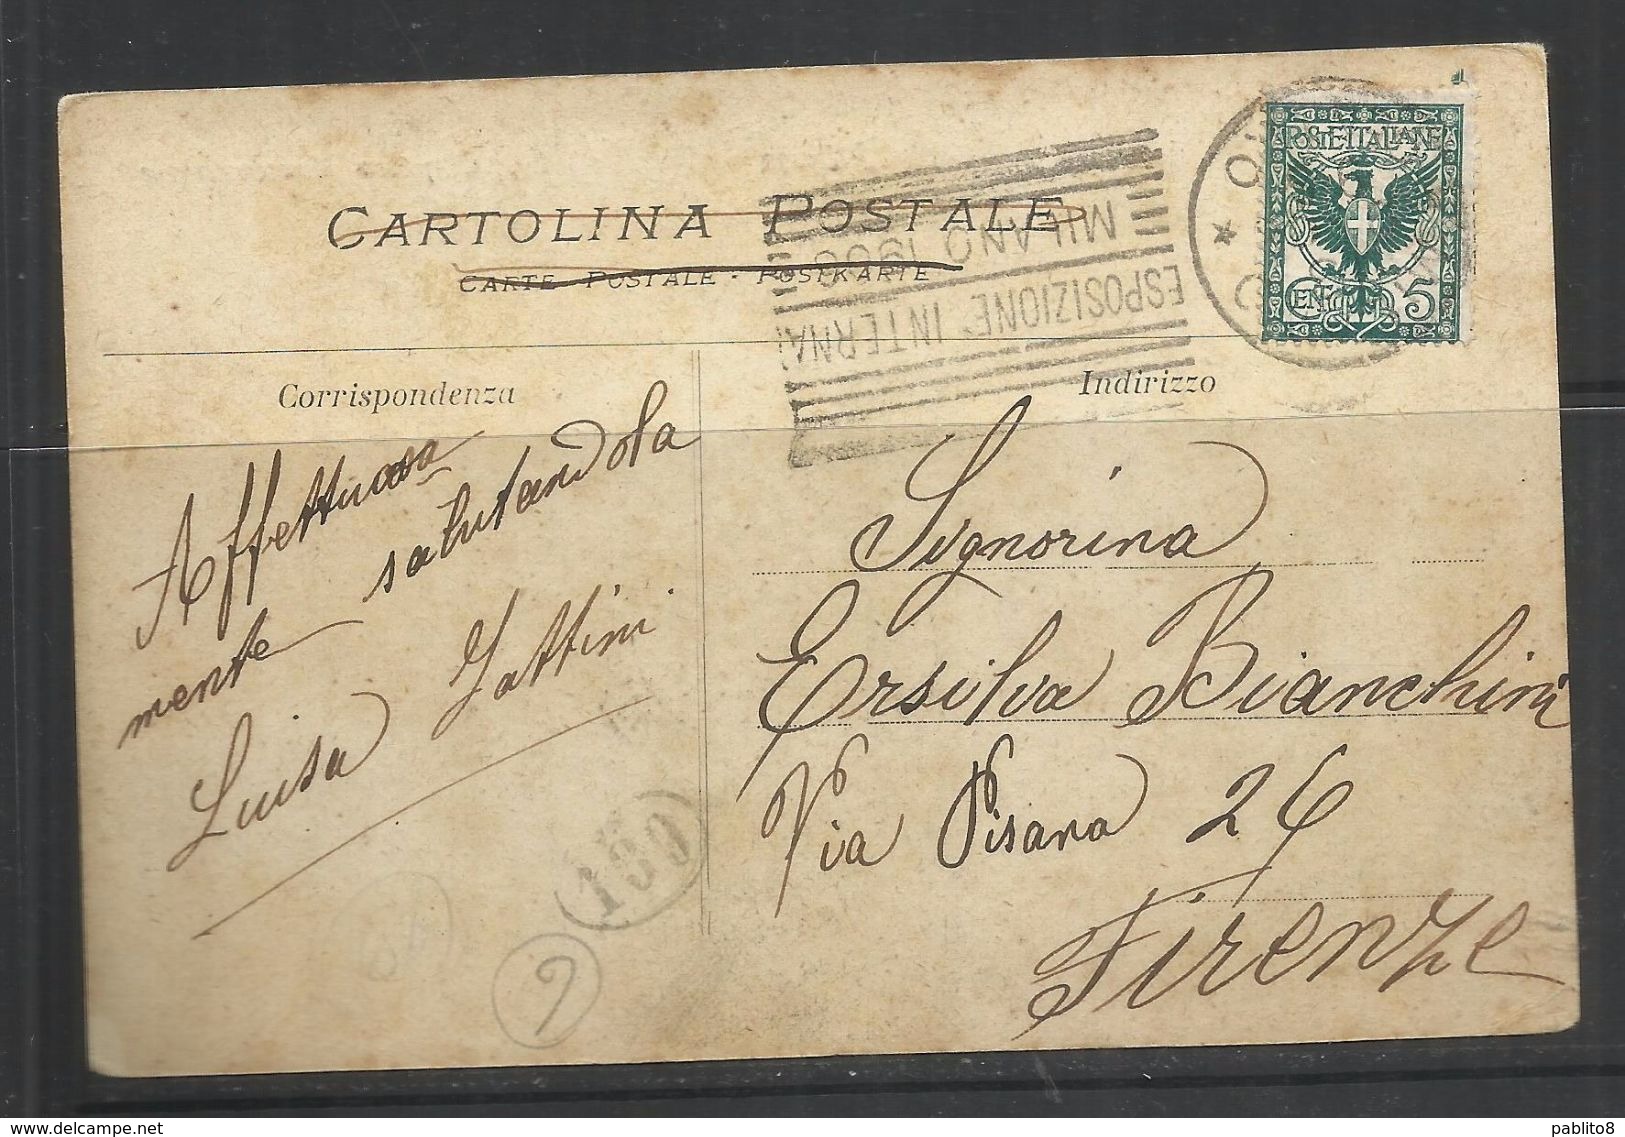 ITALIA REGNO ITALY KINGDOM MILANO CIMITERO MONUMENTALE CENT 5 (1901) CARTOLINA POST CARD VIAGGIATA - Milano